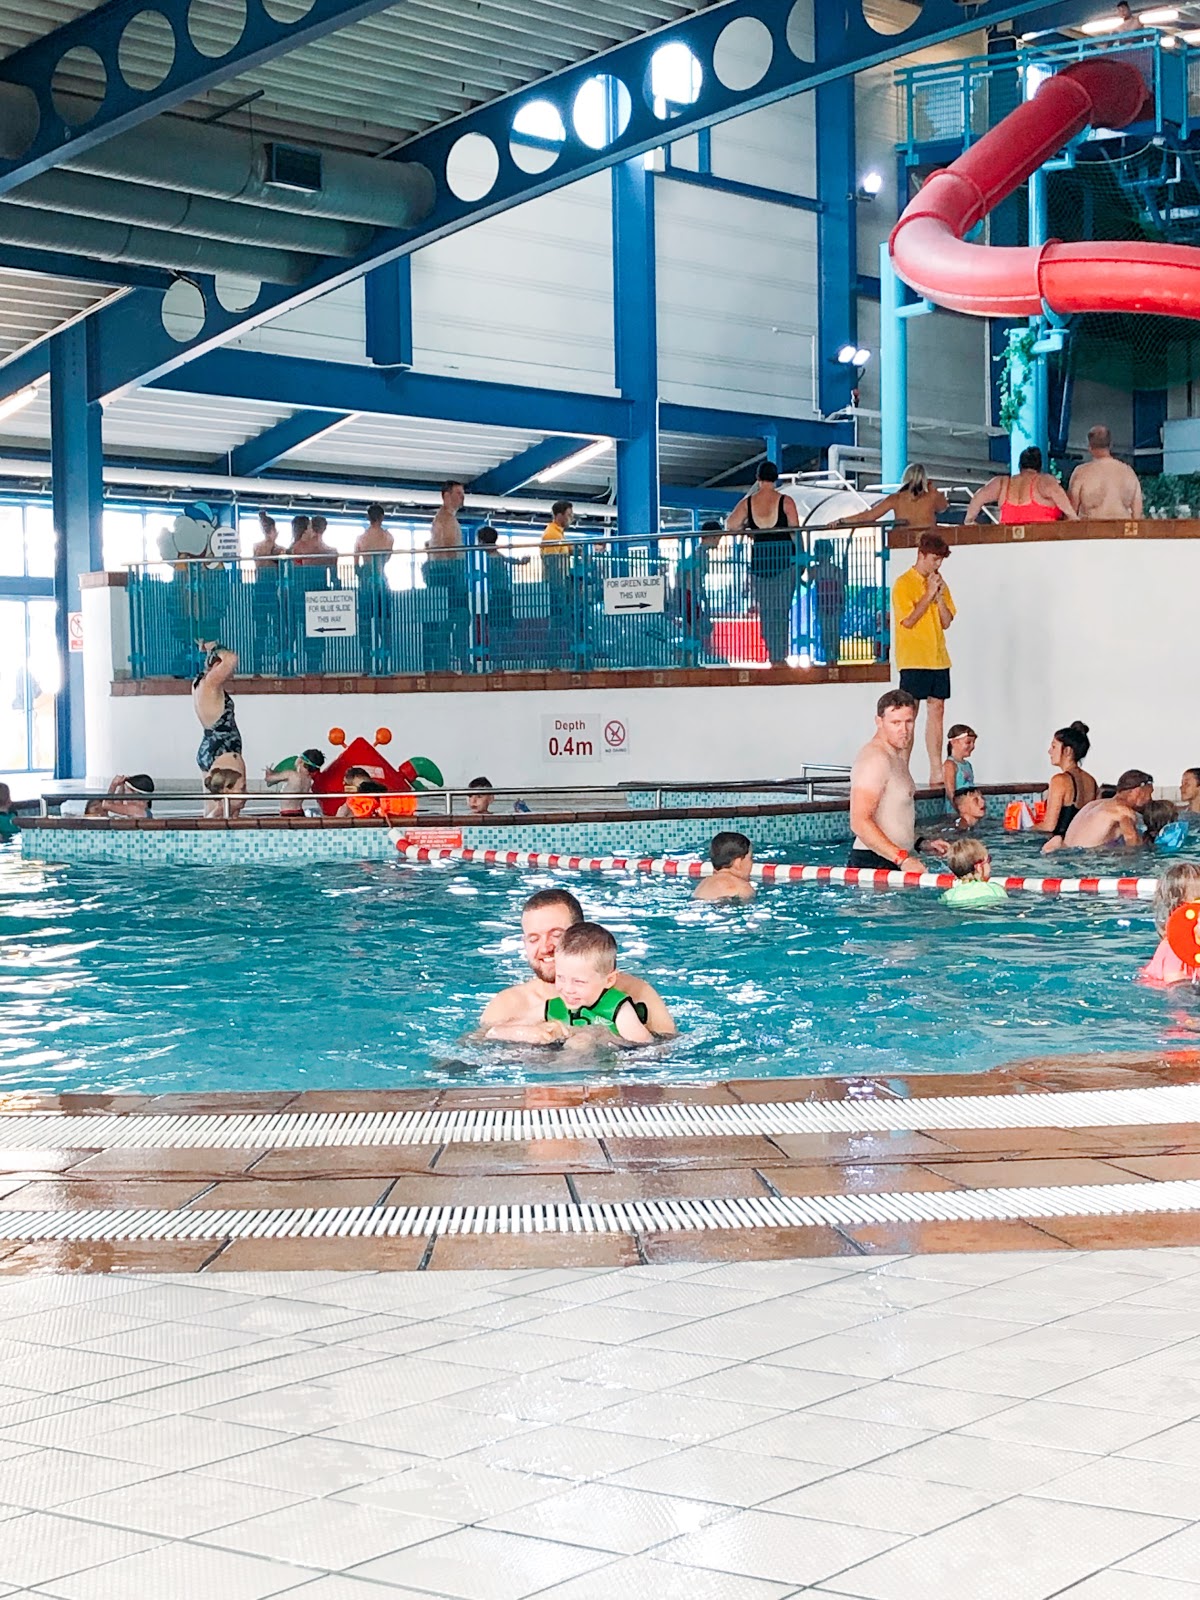 hendra holiday park review, hendra holiday park 2019, hendra holidays, hendra indoor pool